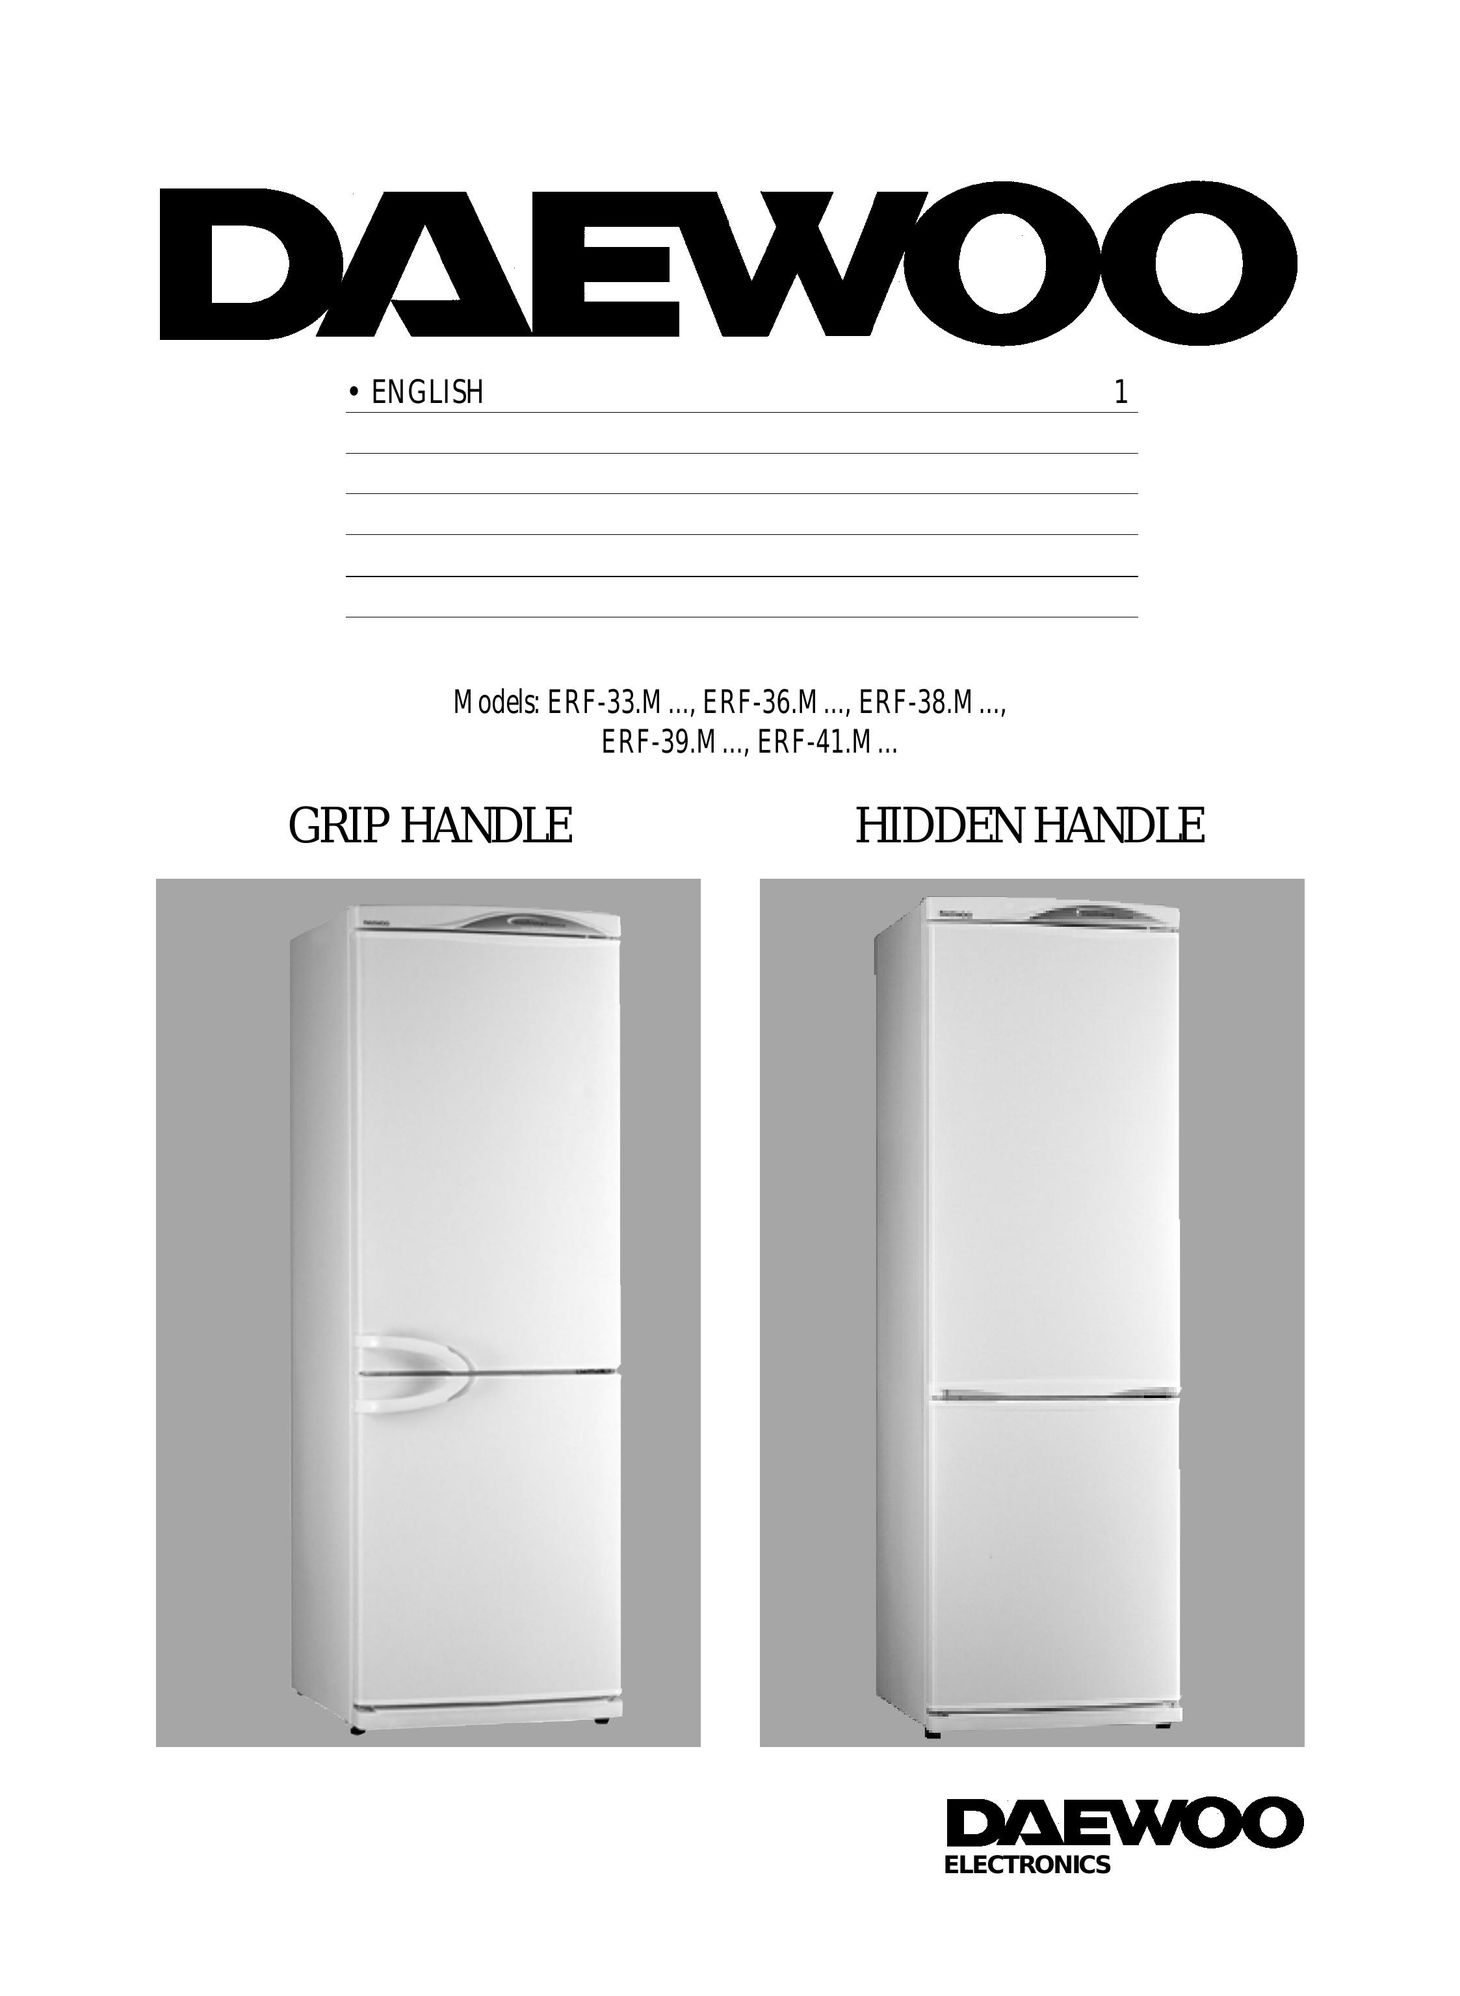 Daewoo ERF-41.M Freezer User Manual